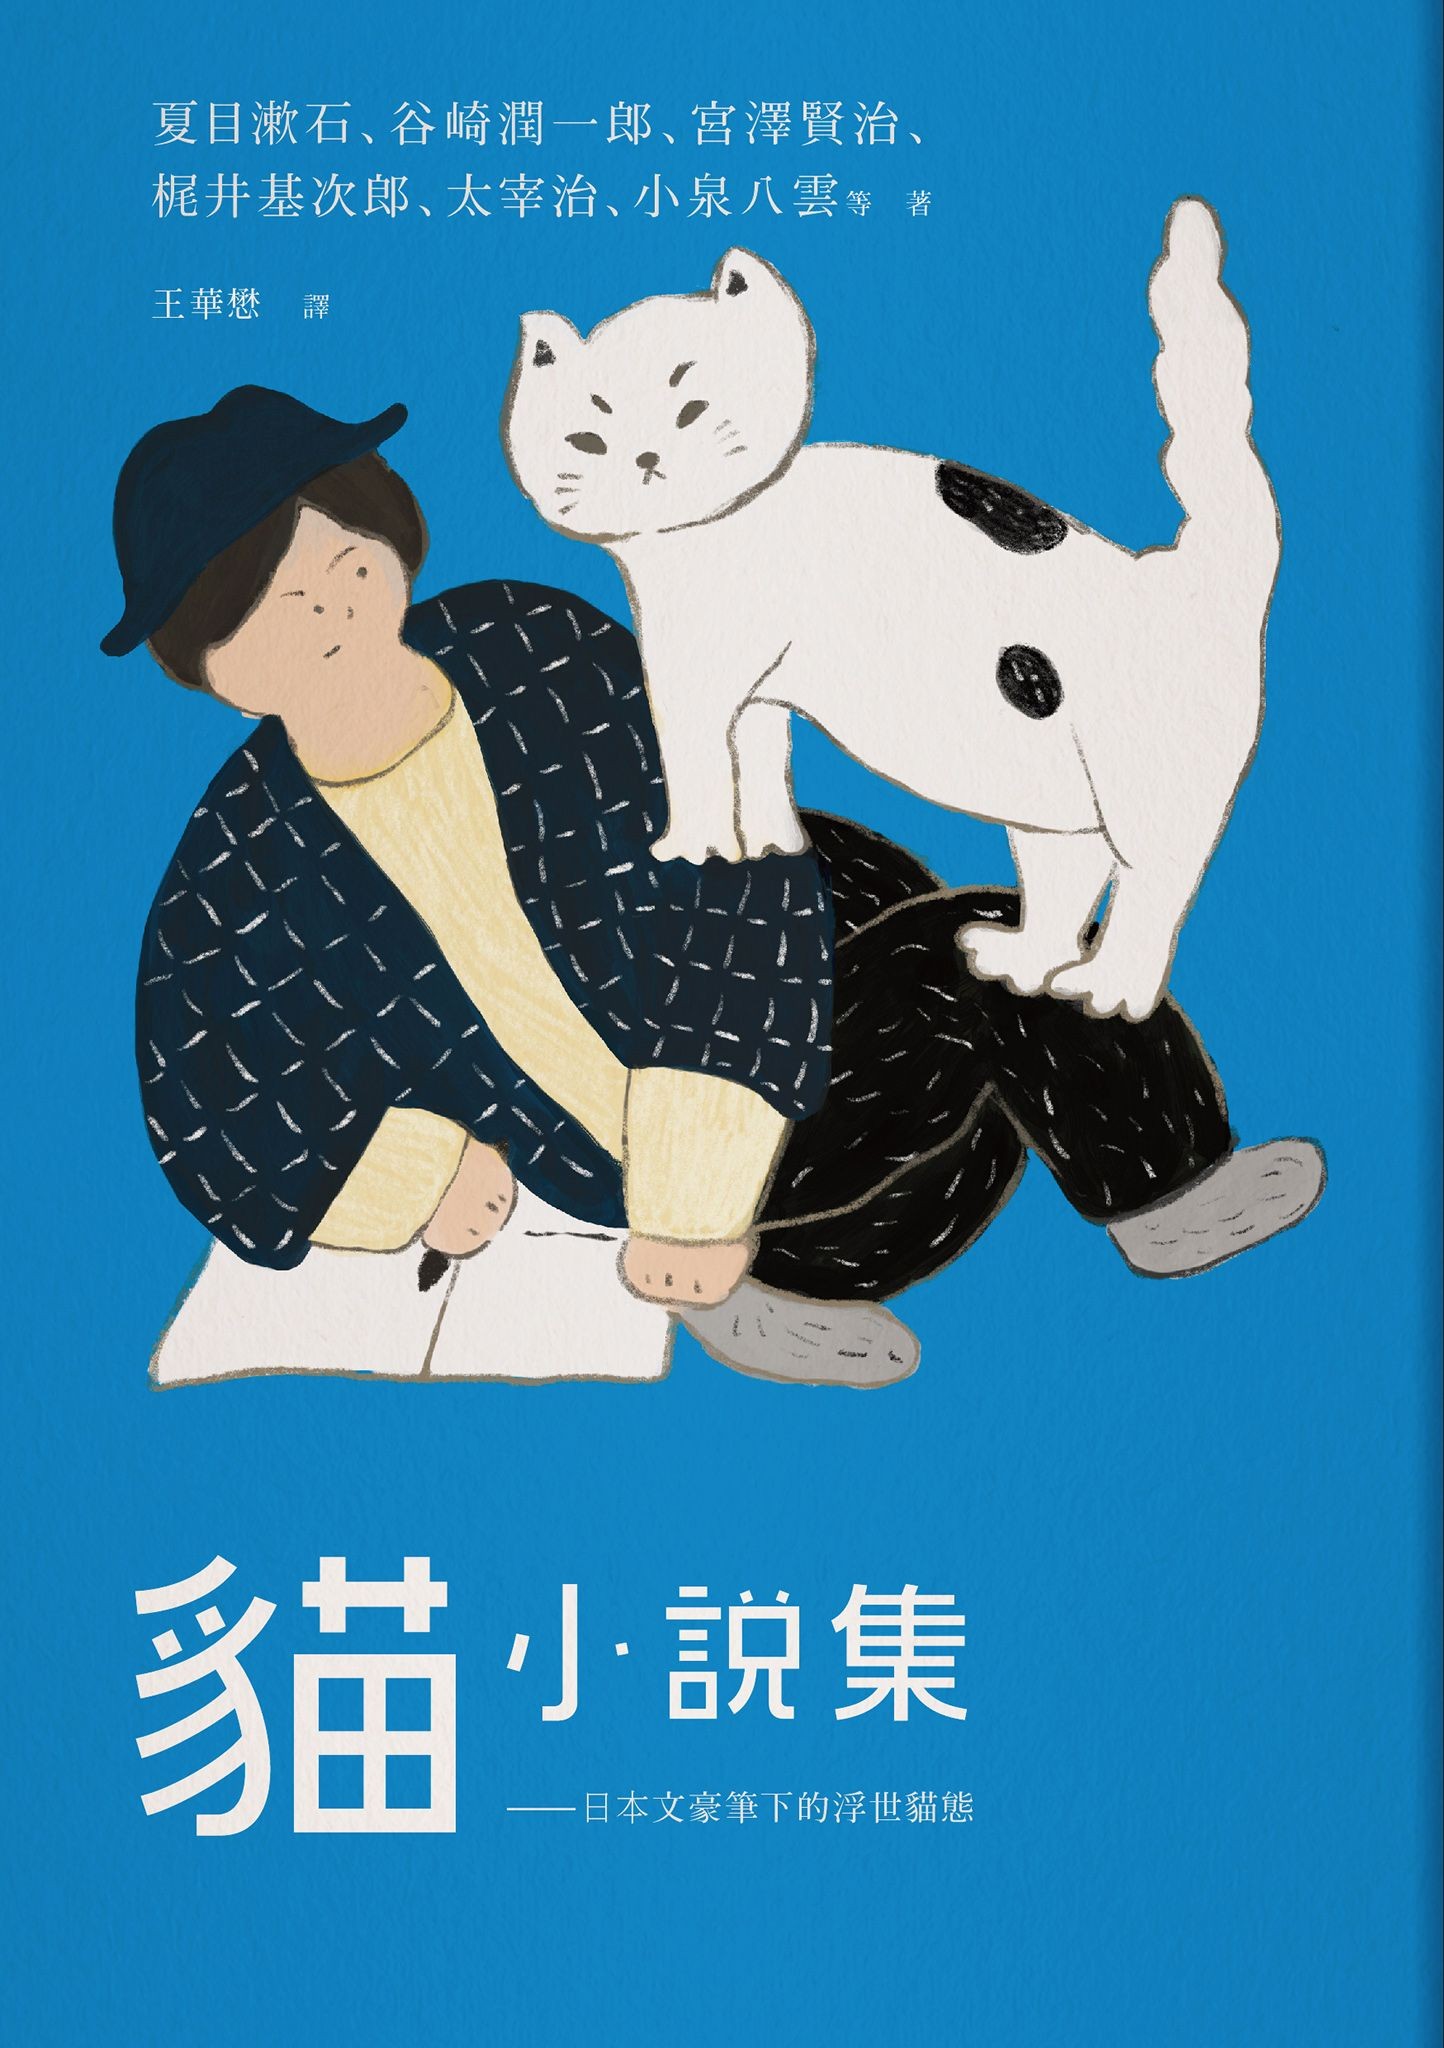 猫小说集一一日本文豪笔下的浮世猫态